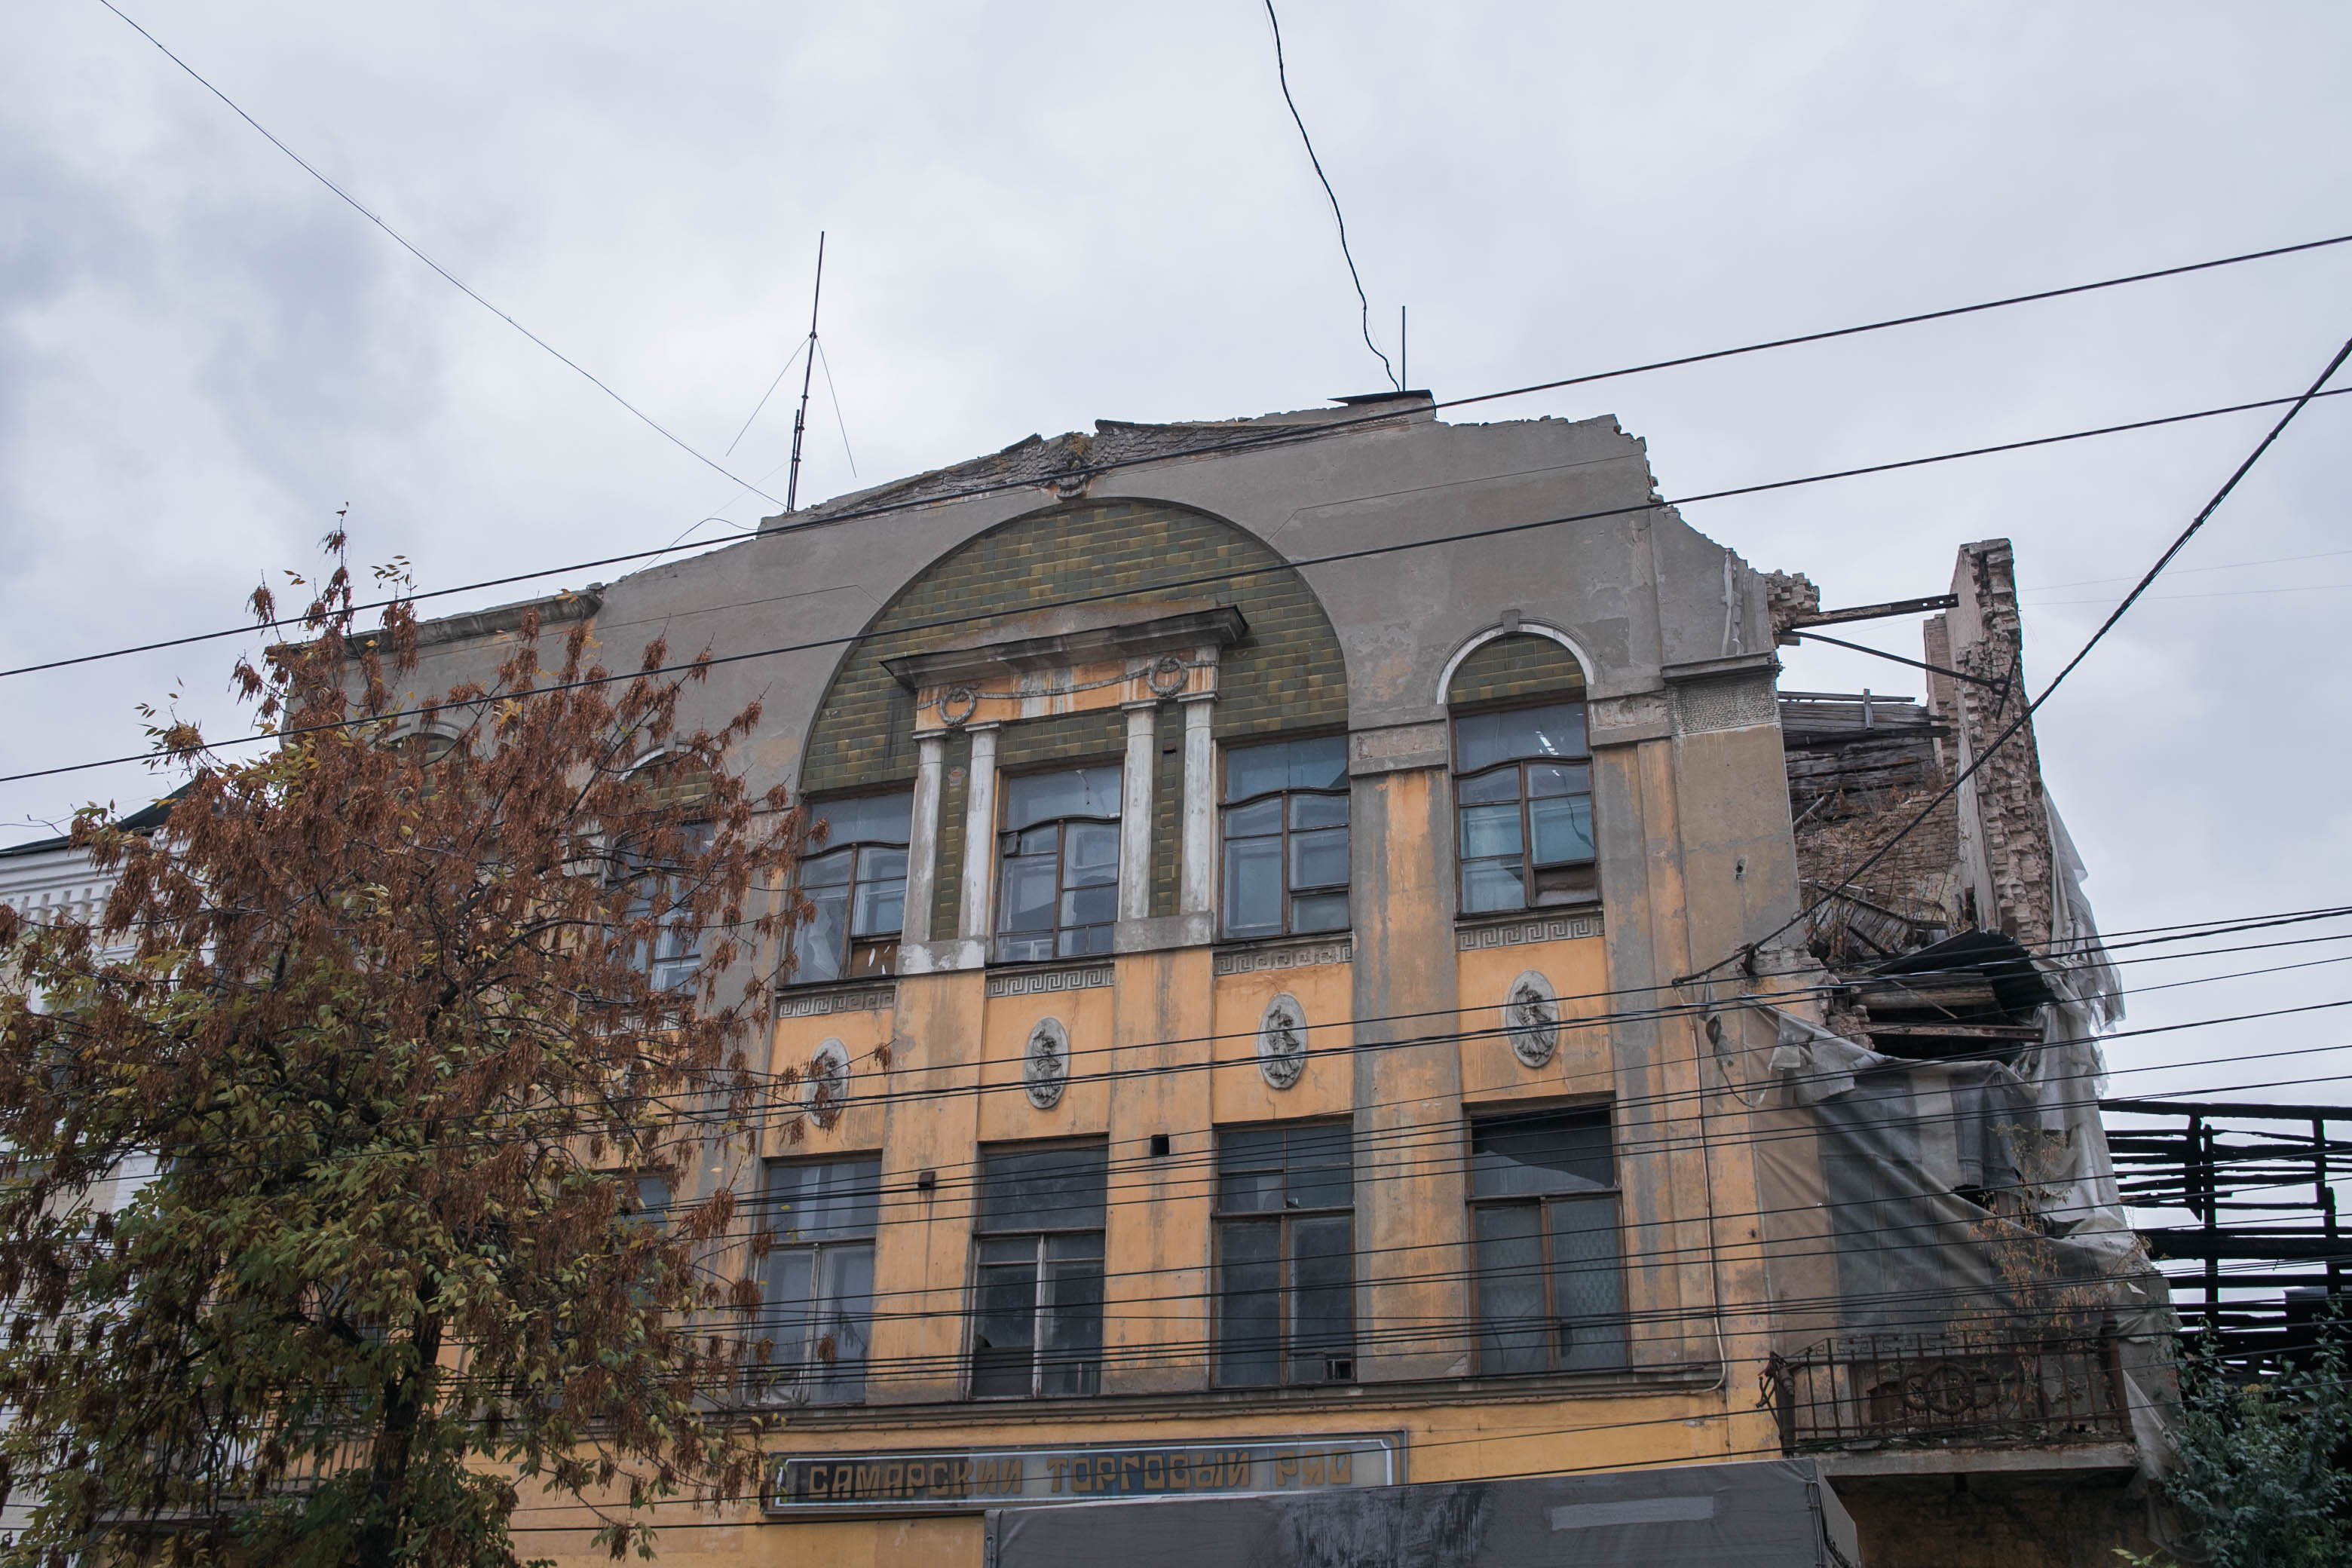 Доходный дом Егорова-Андреева